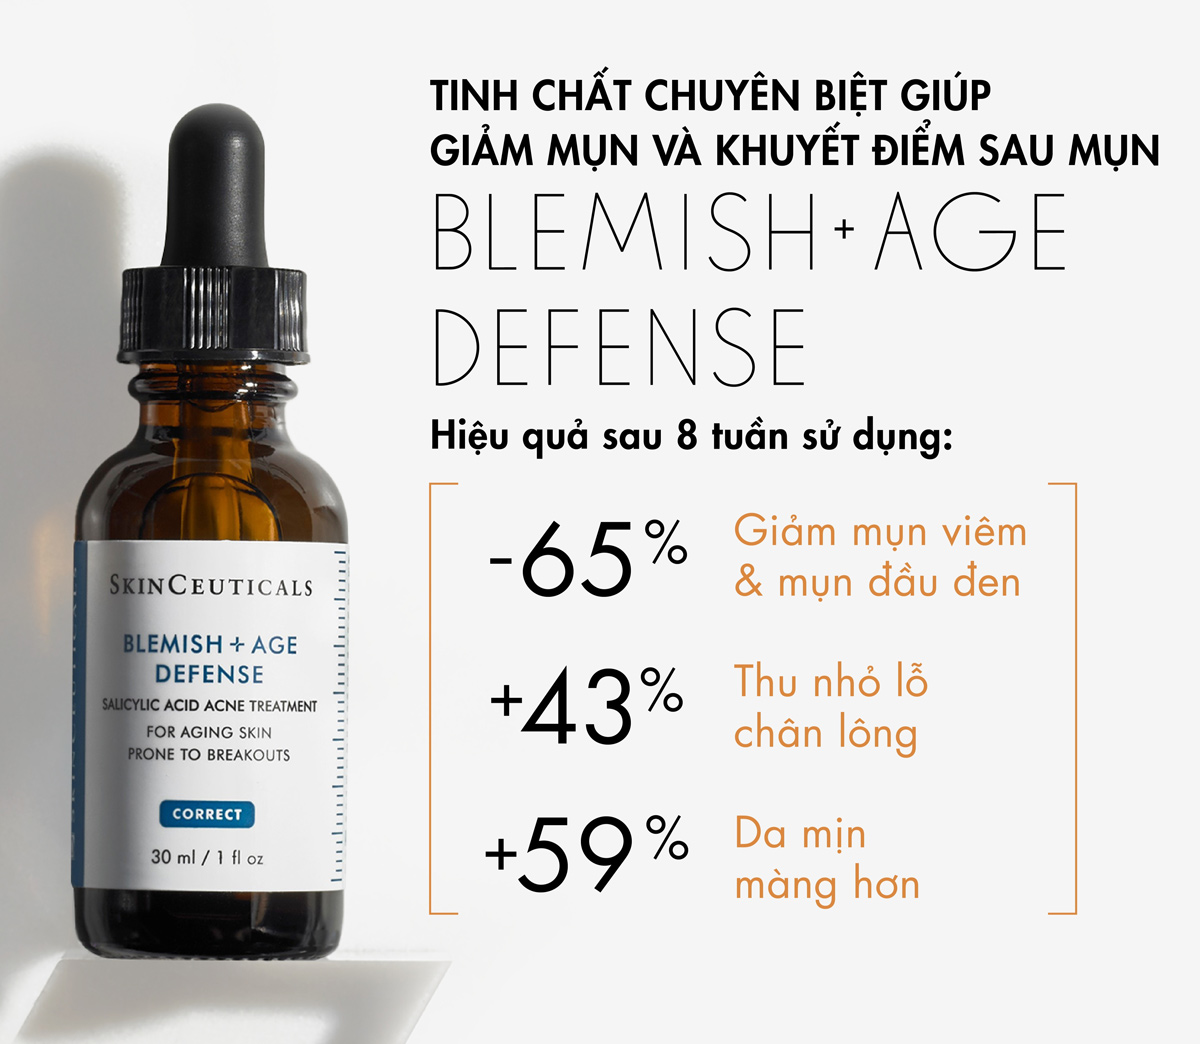 Tinh Chất Skinceuticals Blemish + Age Defense Chuyên Biệt Giúp Giảm Mụn Và Khuyết Điểm Sau Mụn